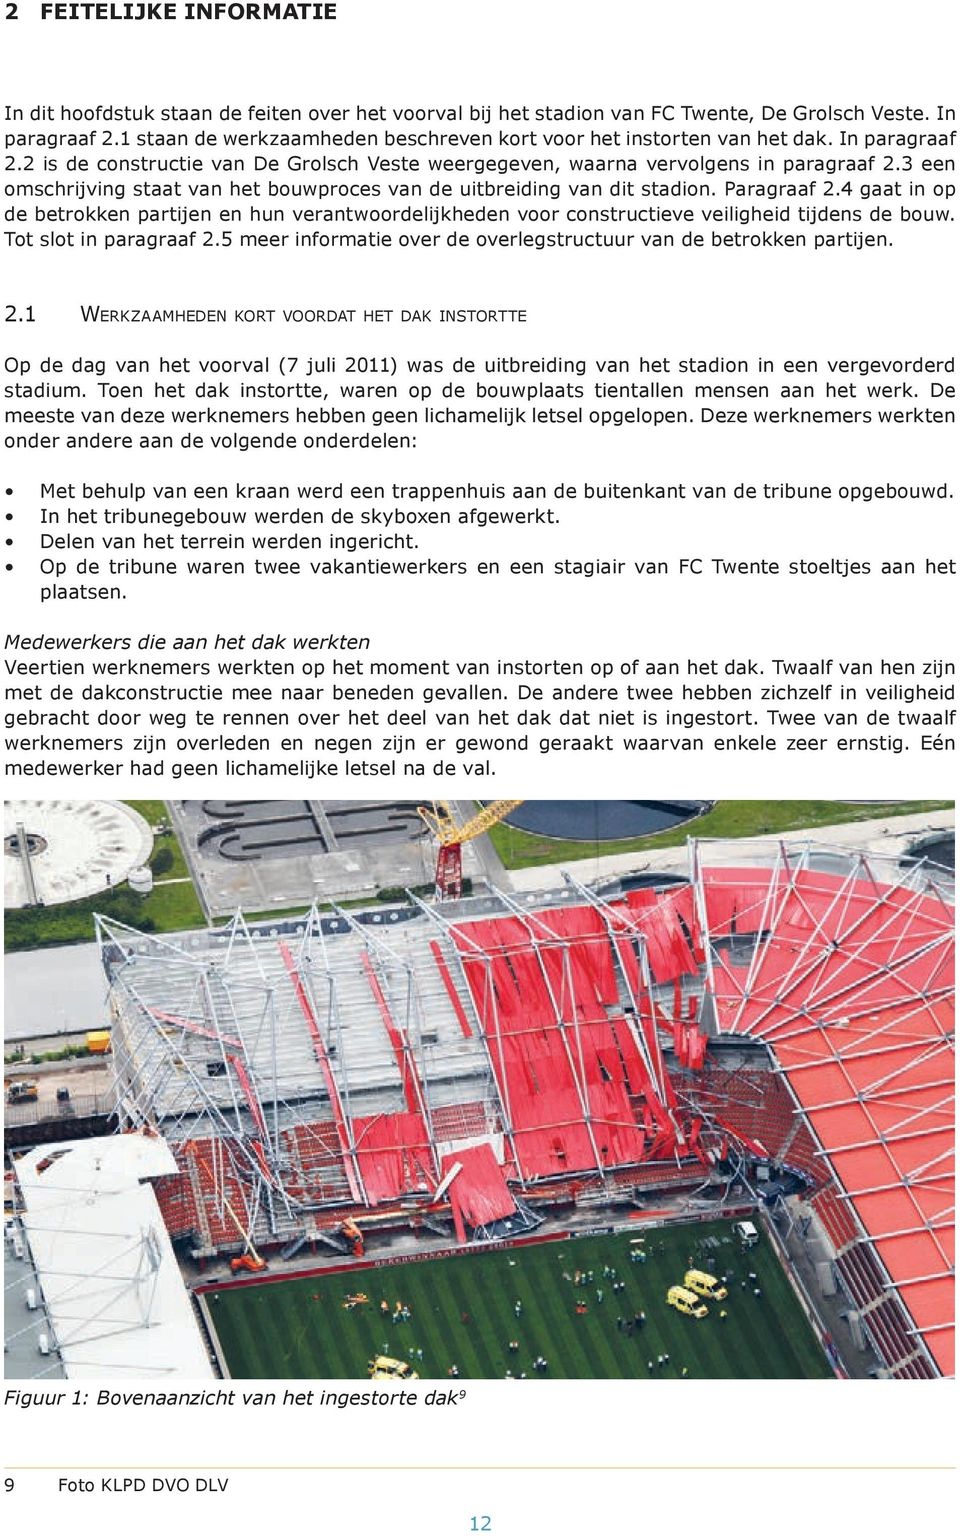 3 een omschrijving staat van het bouwproces van de uitbreiding van dit stadion. Paragraaf 2.